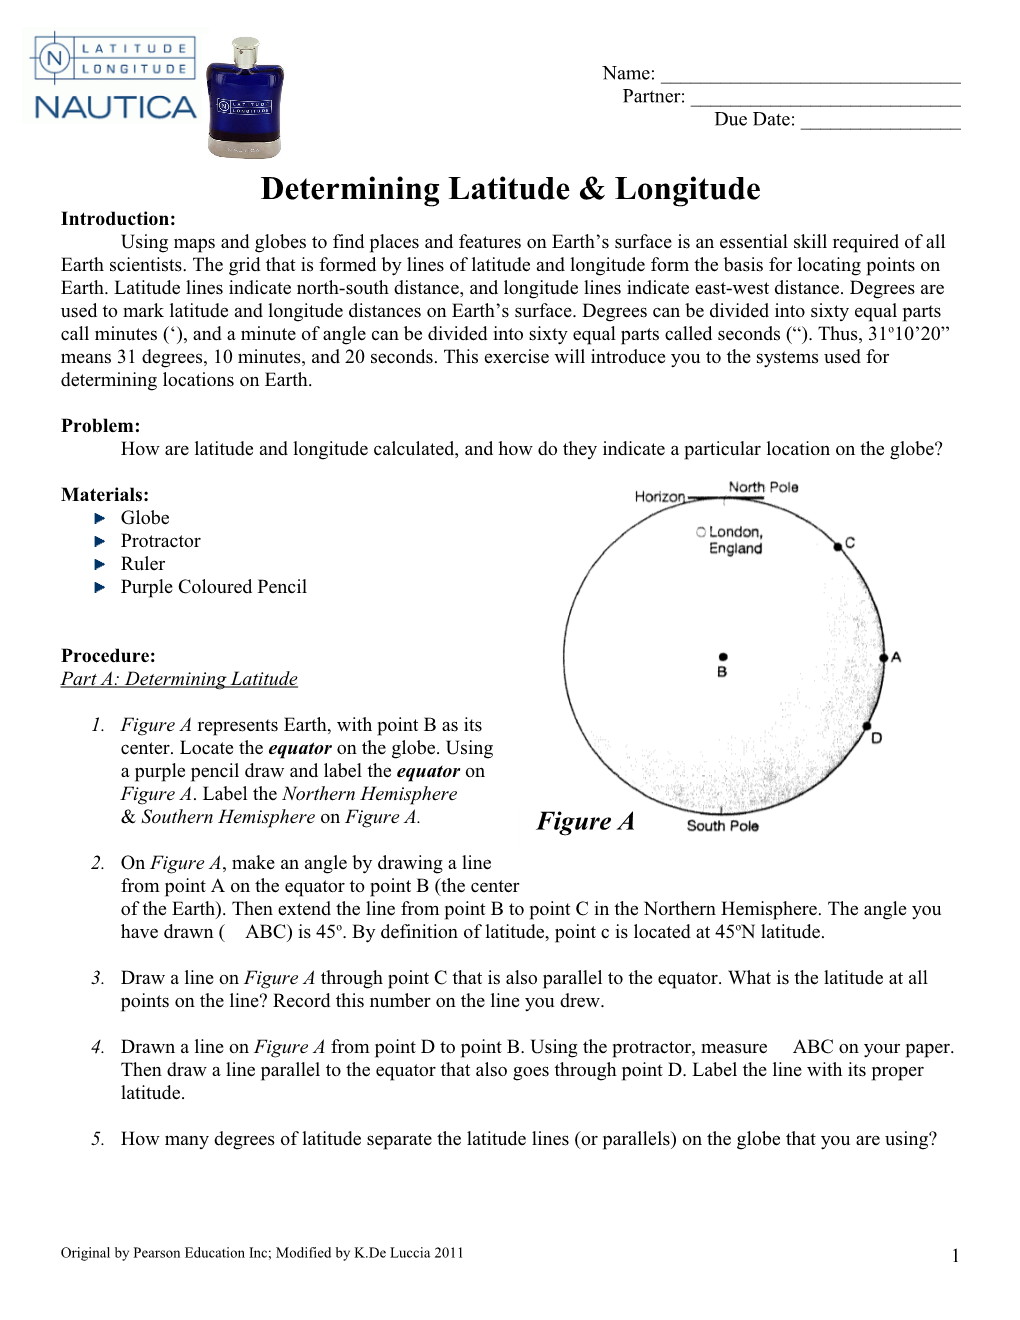 Determining Latitude & Longitude